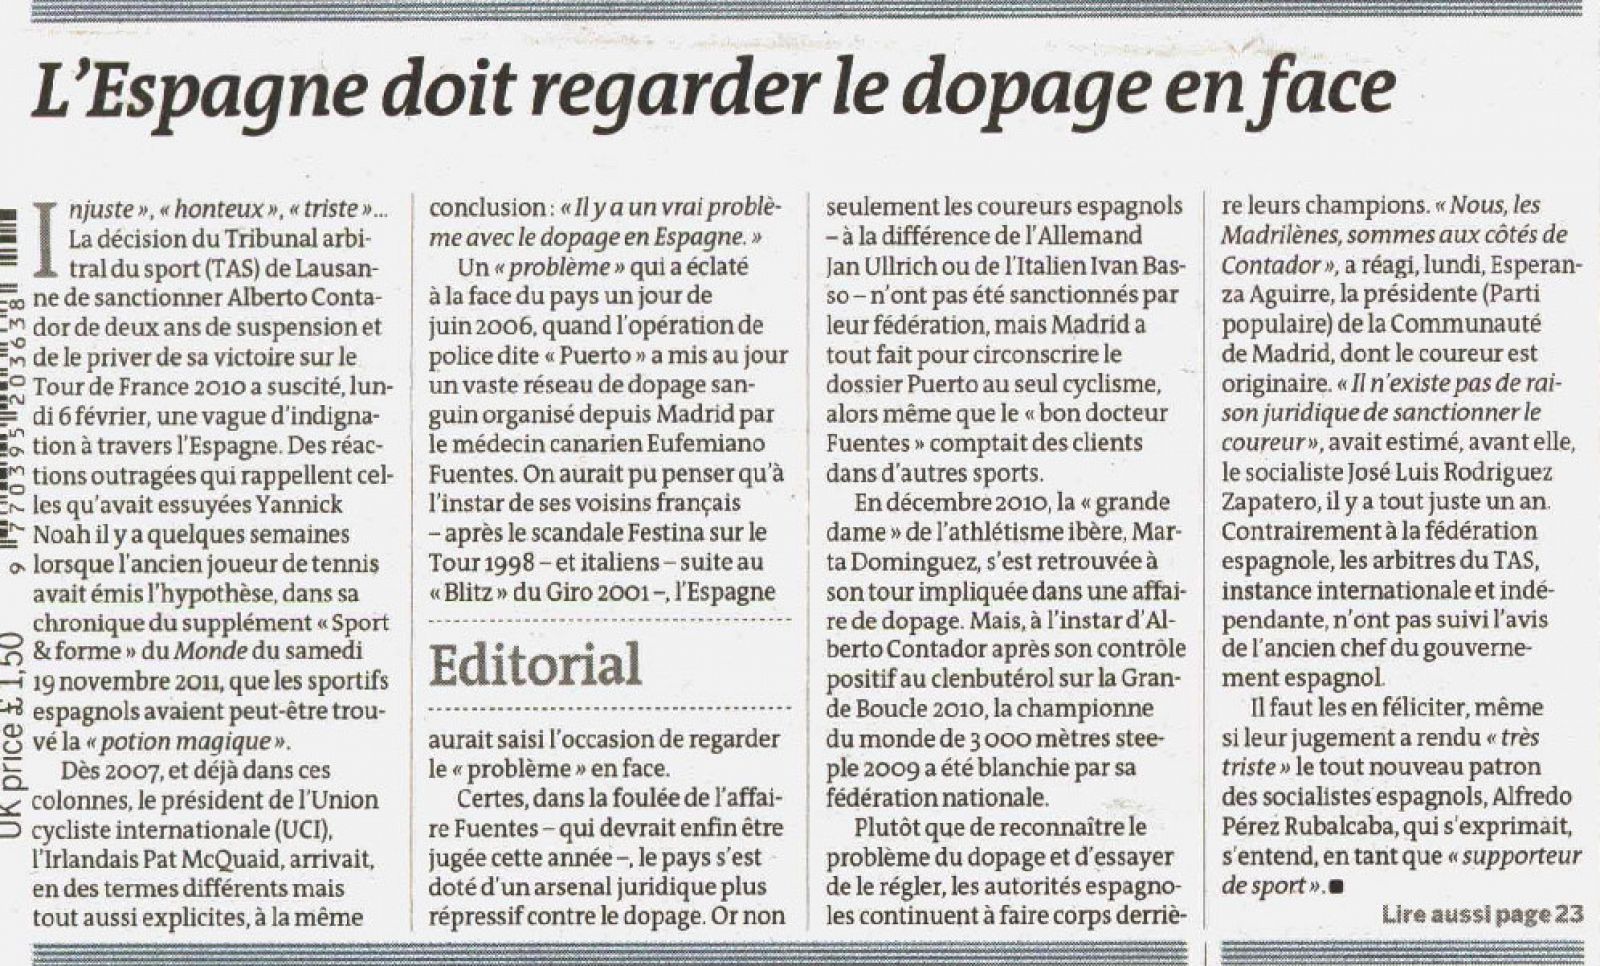 Texto del editorial publicado por Le Monde en su portada del 8 de febrero de 2012: "España debe mirar de frente al dopaje"